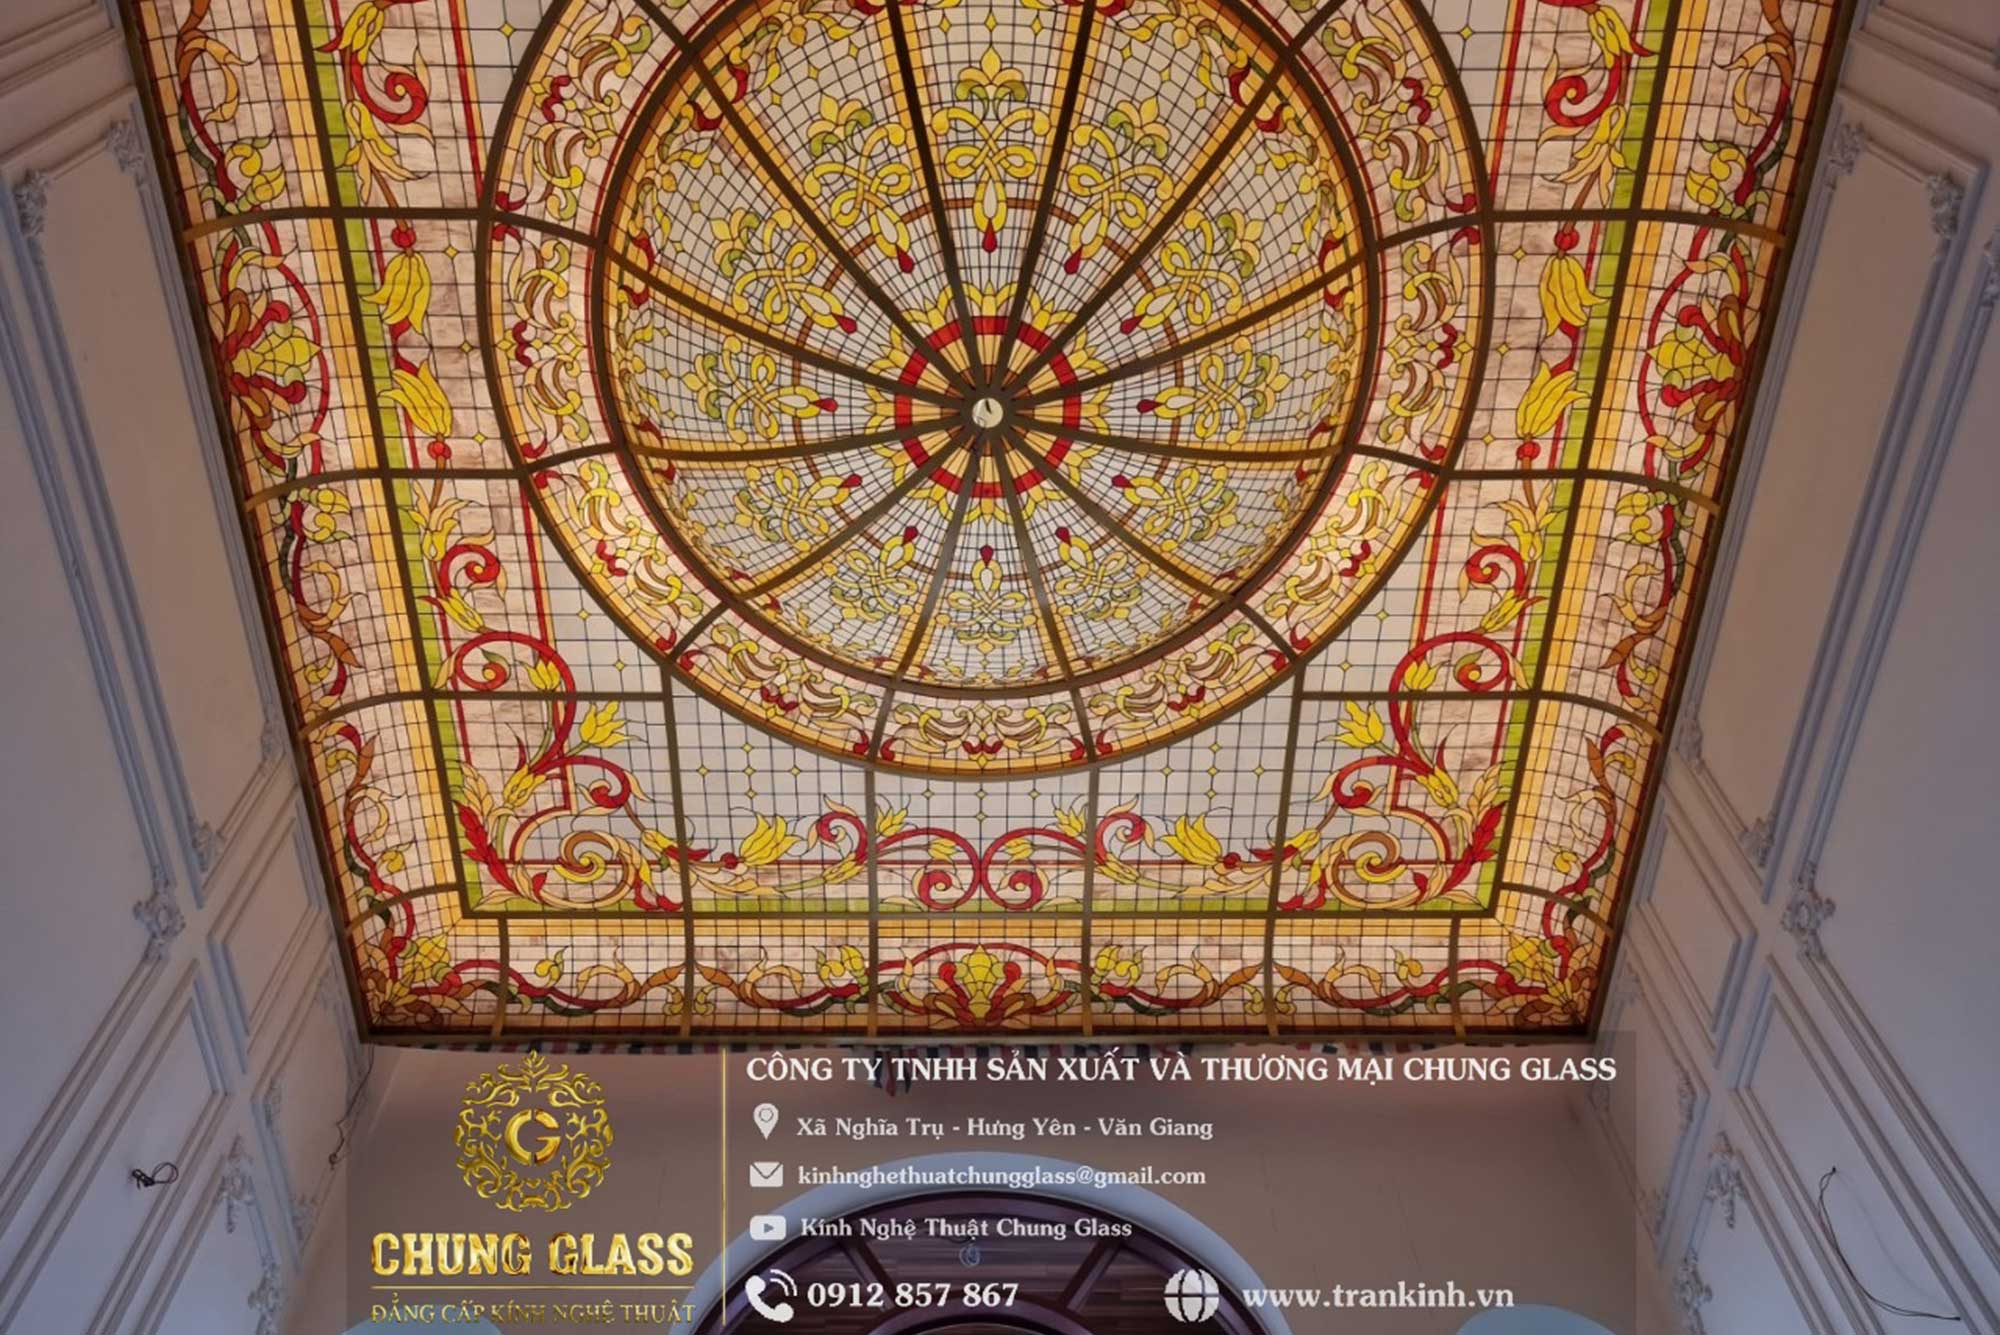 [CHUNG GLASS] – Công ty chuyên gia công tranh kính, tranh nghệ thuật trong hệ sinh thái Home Việt Design